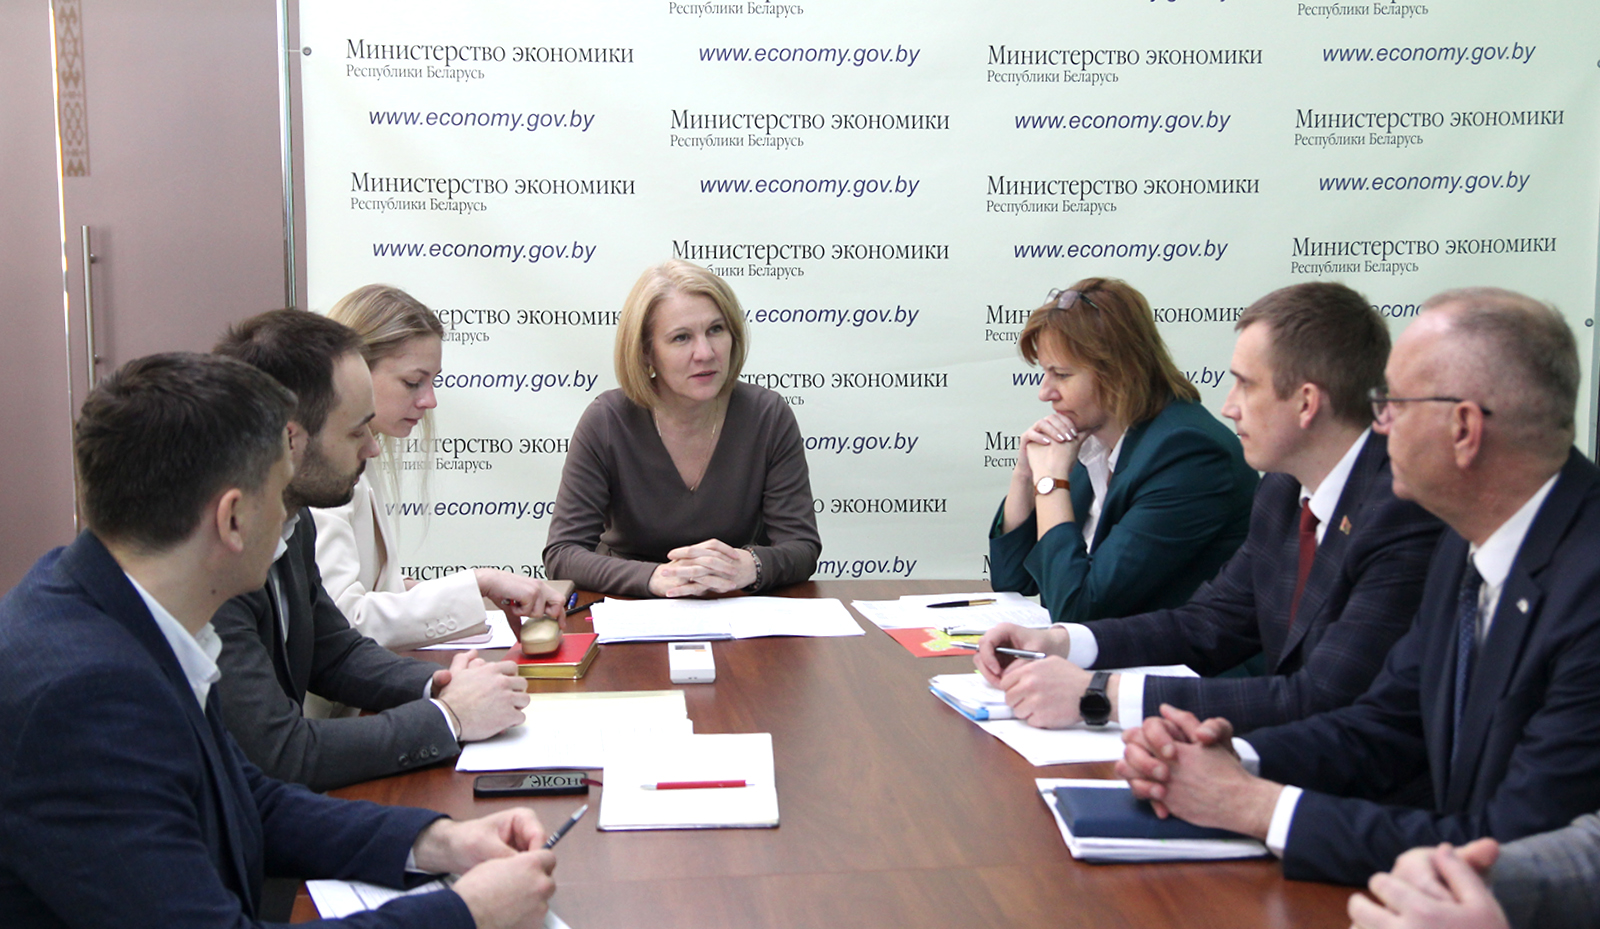 Алеся Абраменко: Администрации СЭЗ «Минск» необходимо активно привлекать якорных инвесторов на готовые инвестиционные площадки